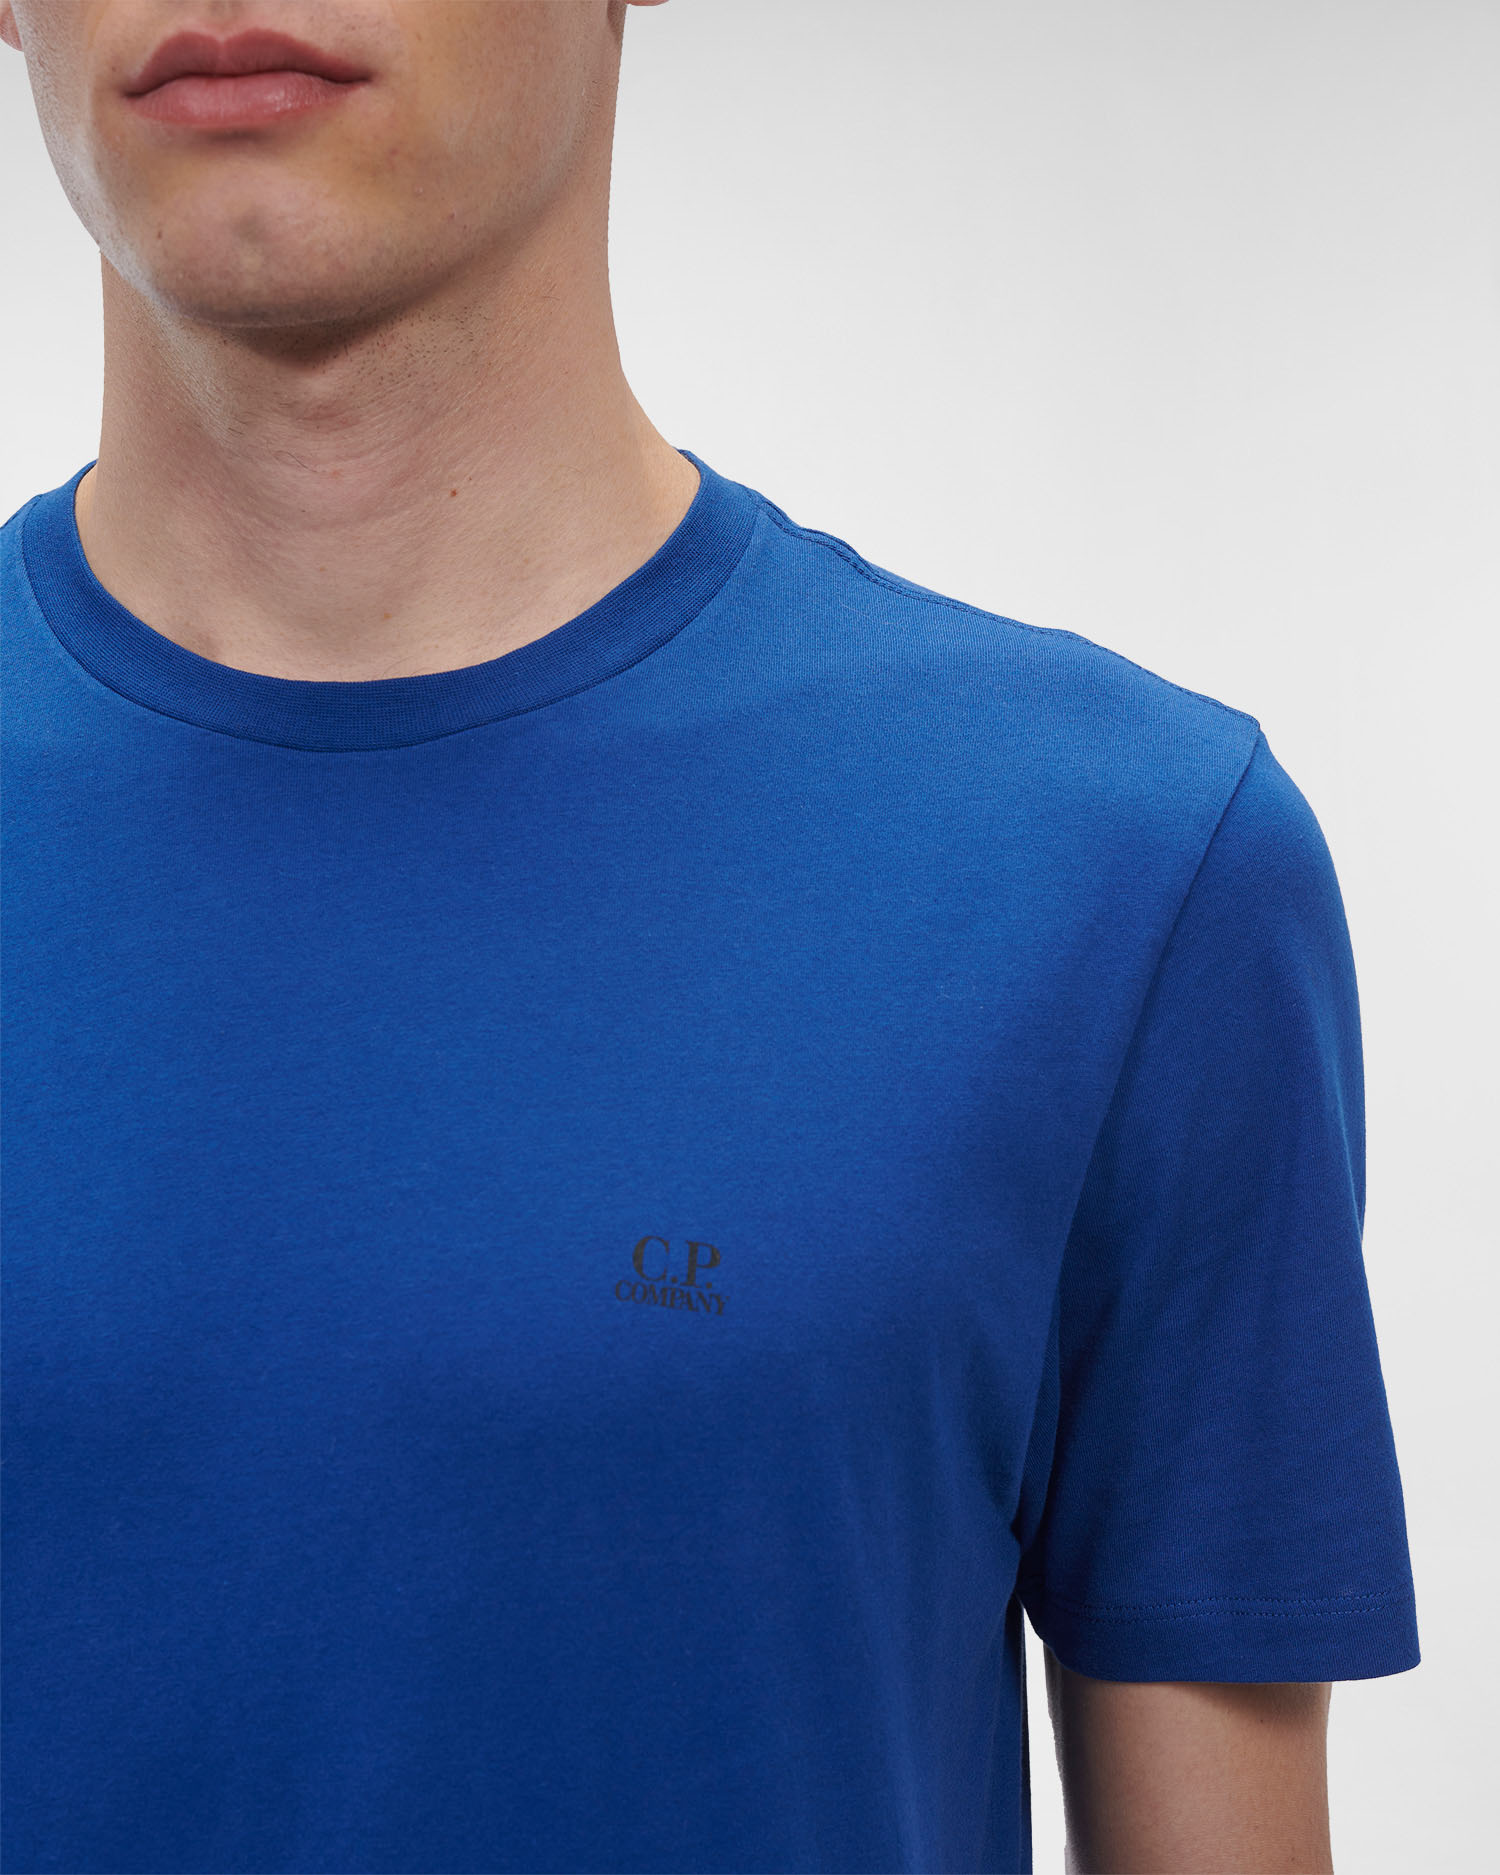 シーピーカンパニー メンズ Tシャツ blue Midnight T-shirts トップス